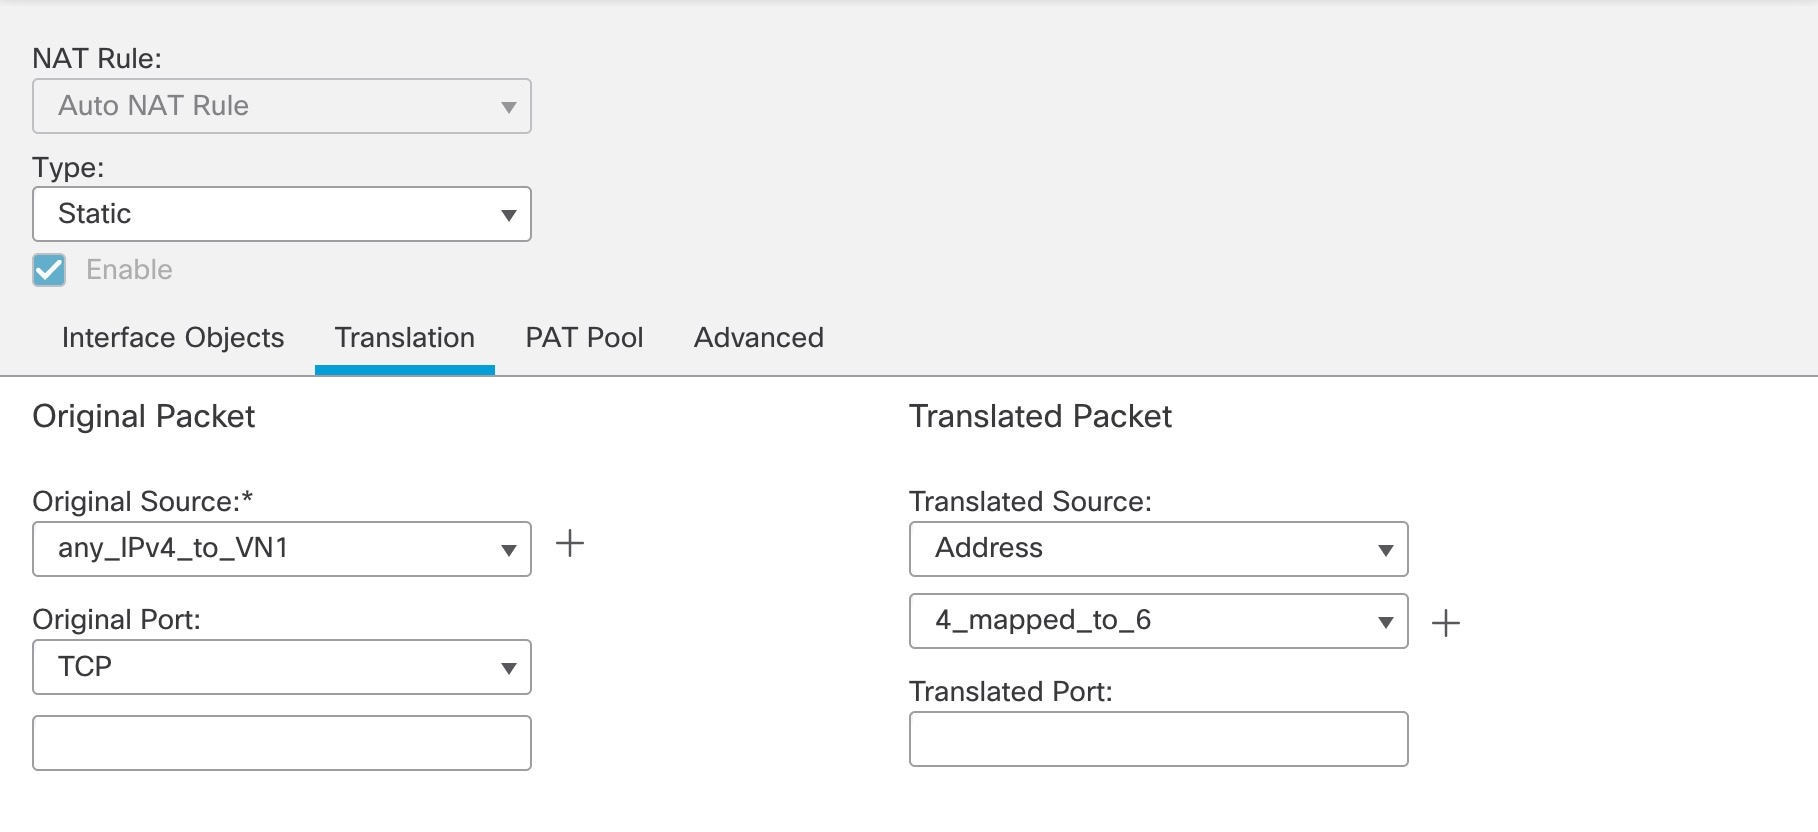 [Translation] タブには、[Original Source] および [Translated Source] ドロップダウンリストが表示され、元の送信元と変換済みの送信元を設定できます。